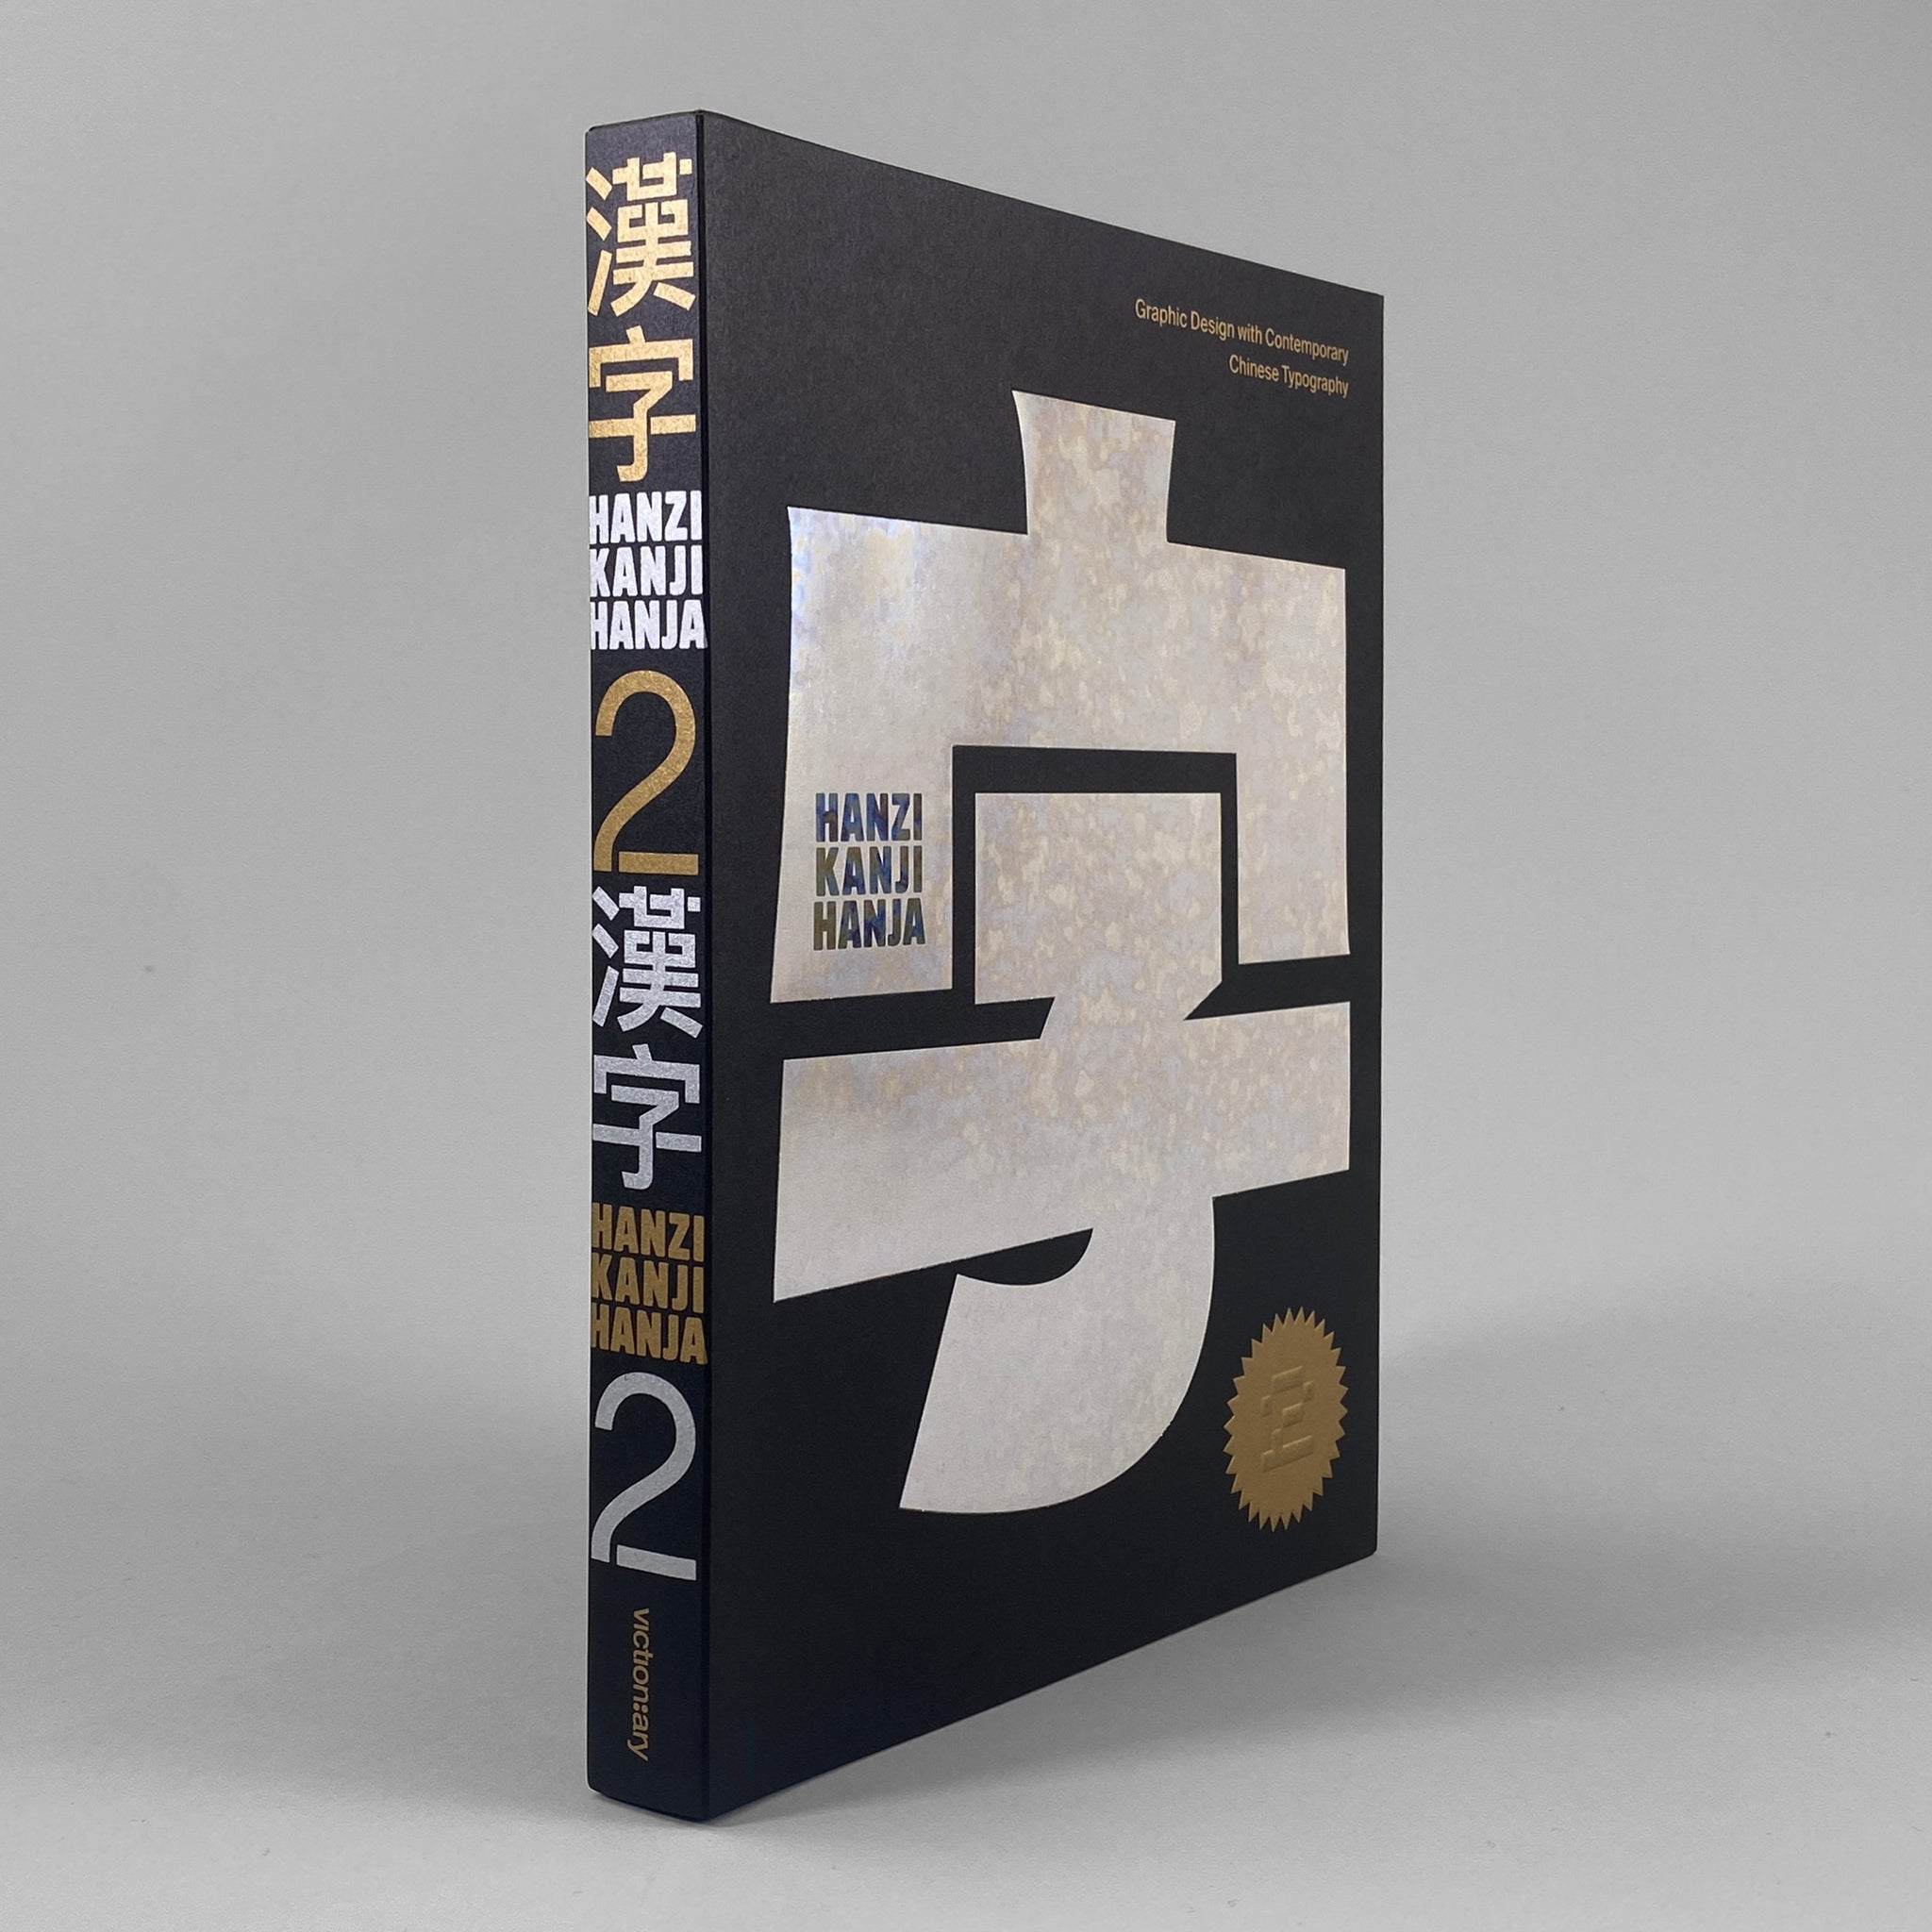 Down　Hanzi　Design　–　Chinese　with　Draw　Kanji　Contemporary　Hanja　2:　Graphic　Typograp